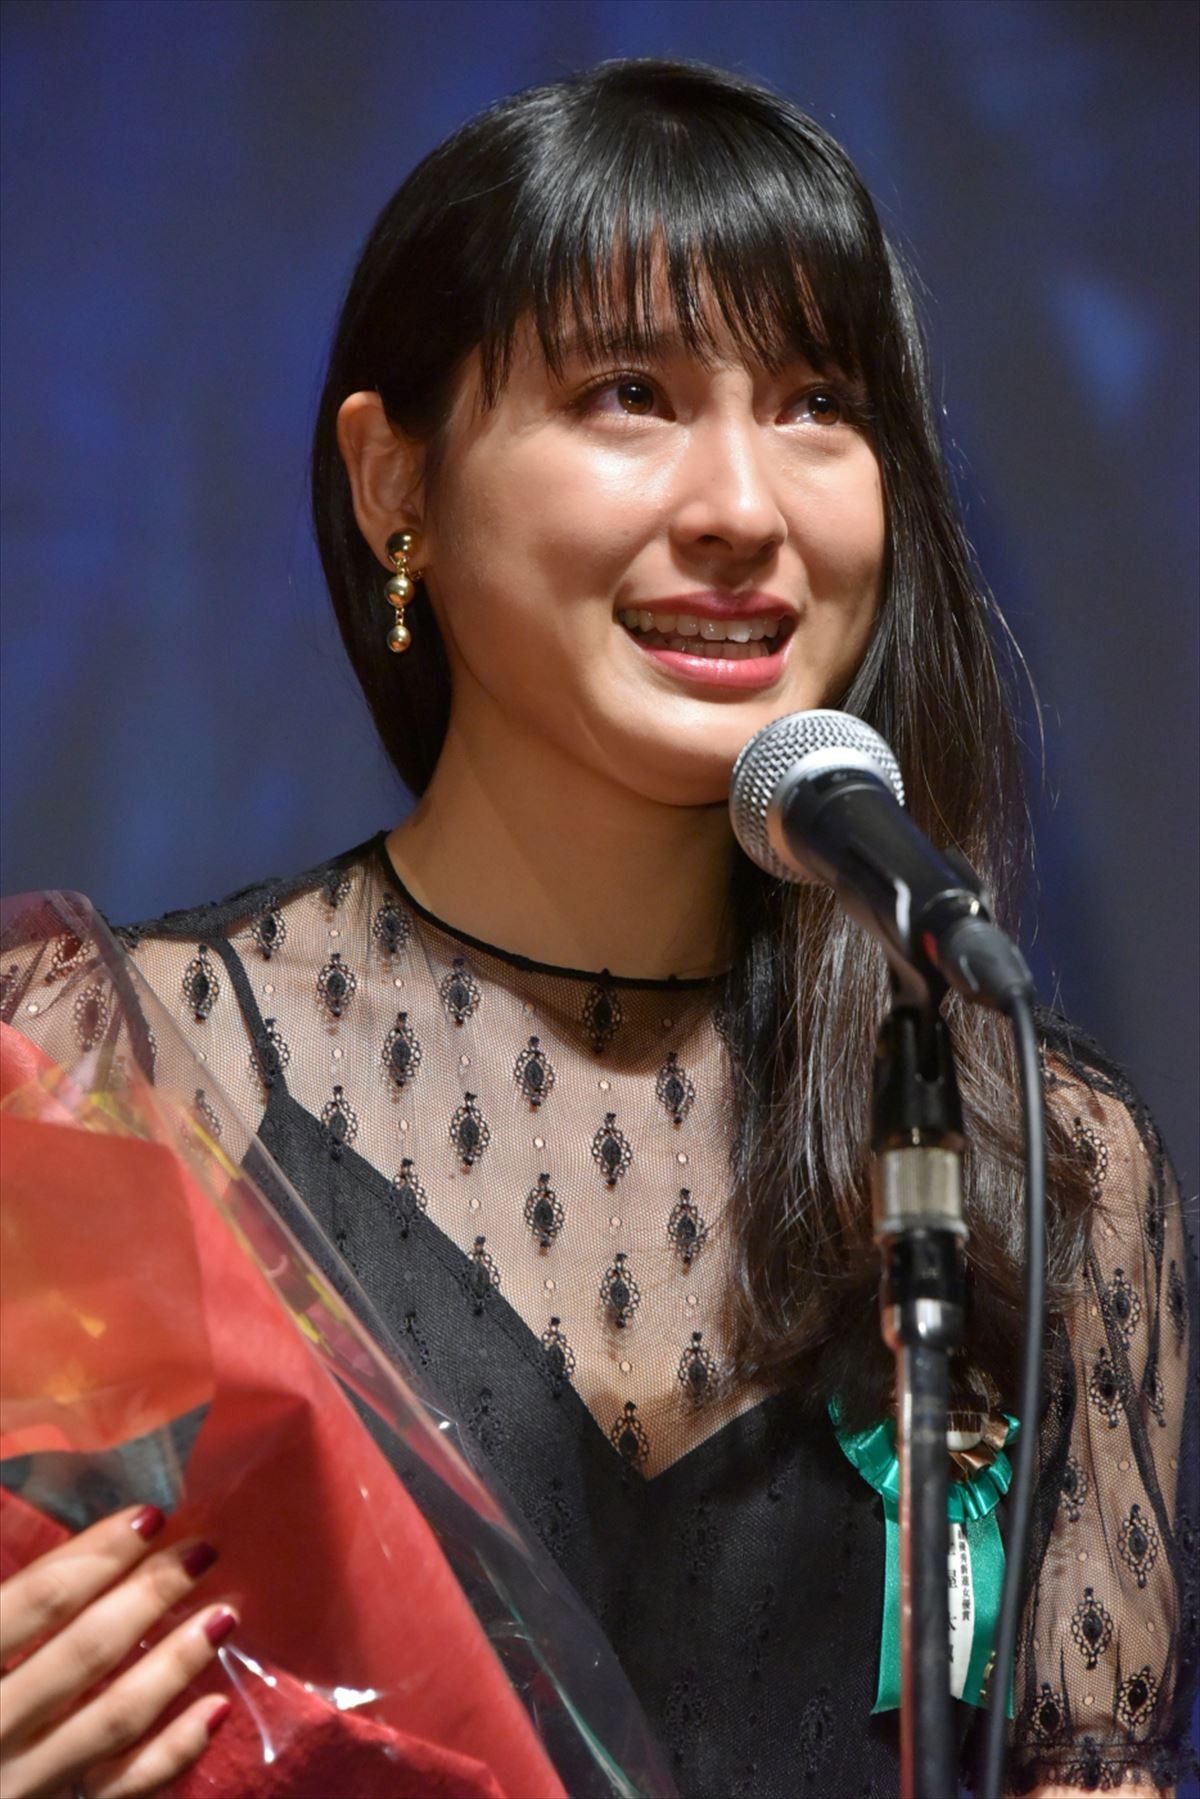 土屋太鳳、最優秀新進女優賞受賞に涙　「出会った全ての人、時間に心から感謝」